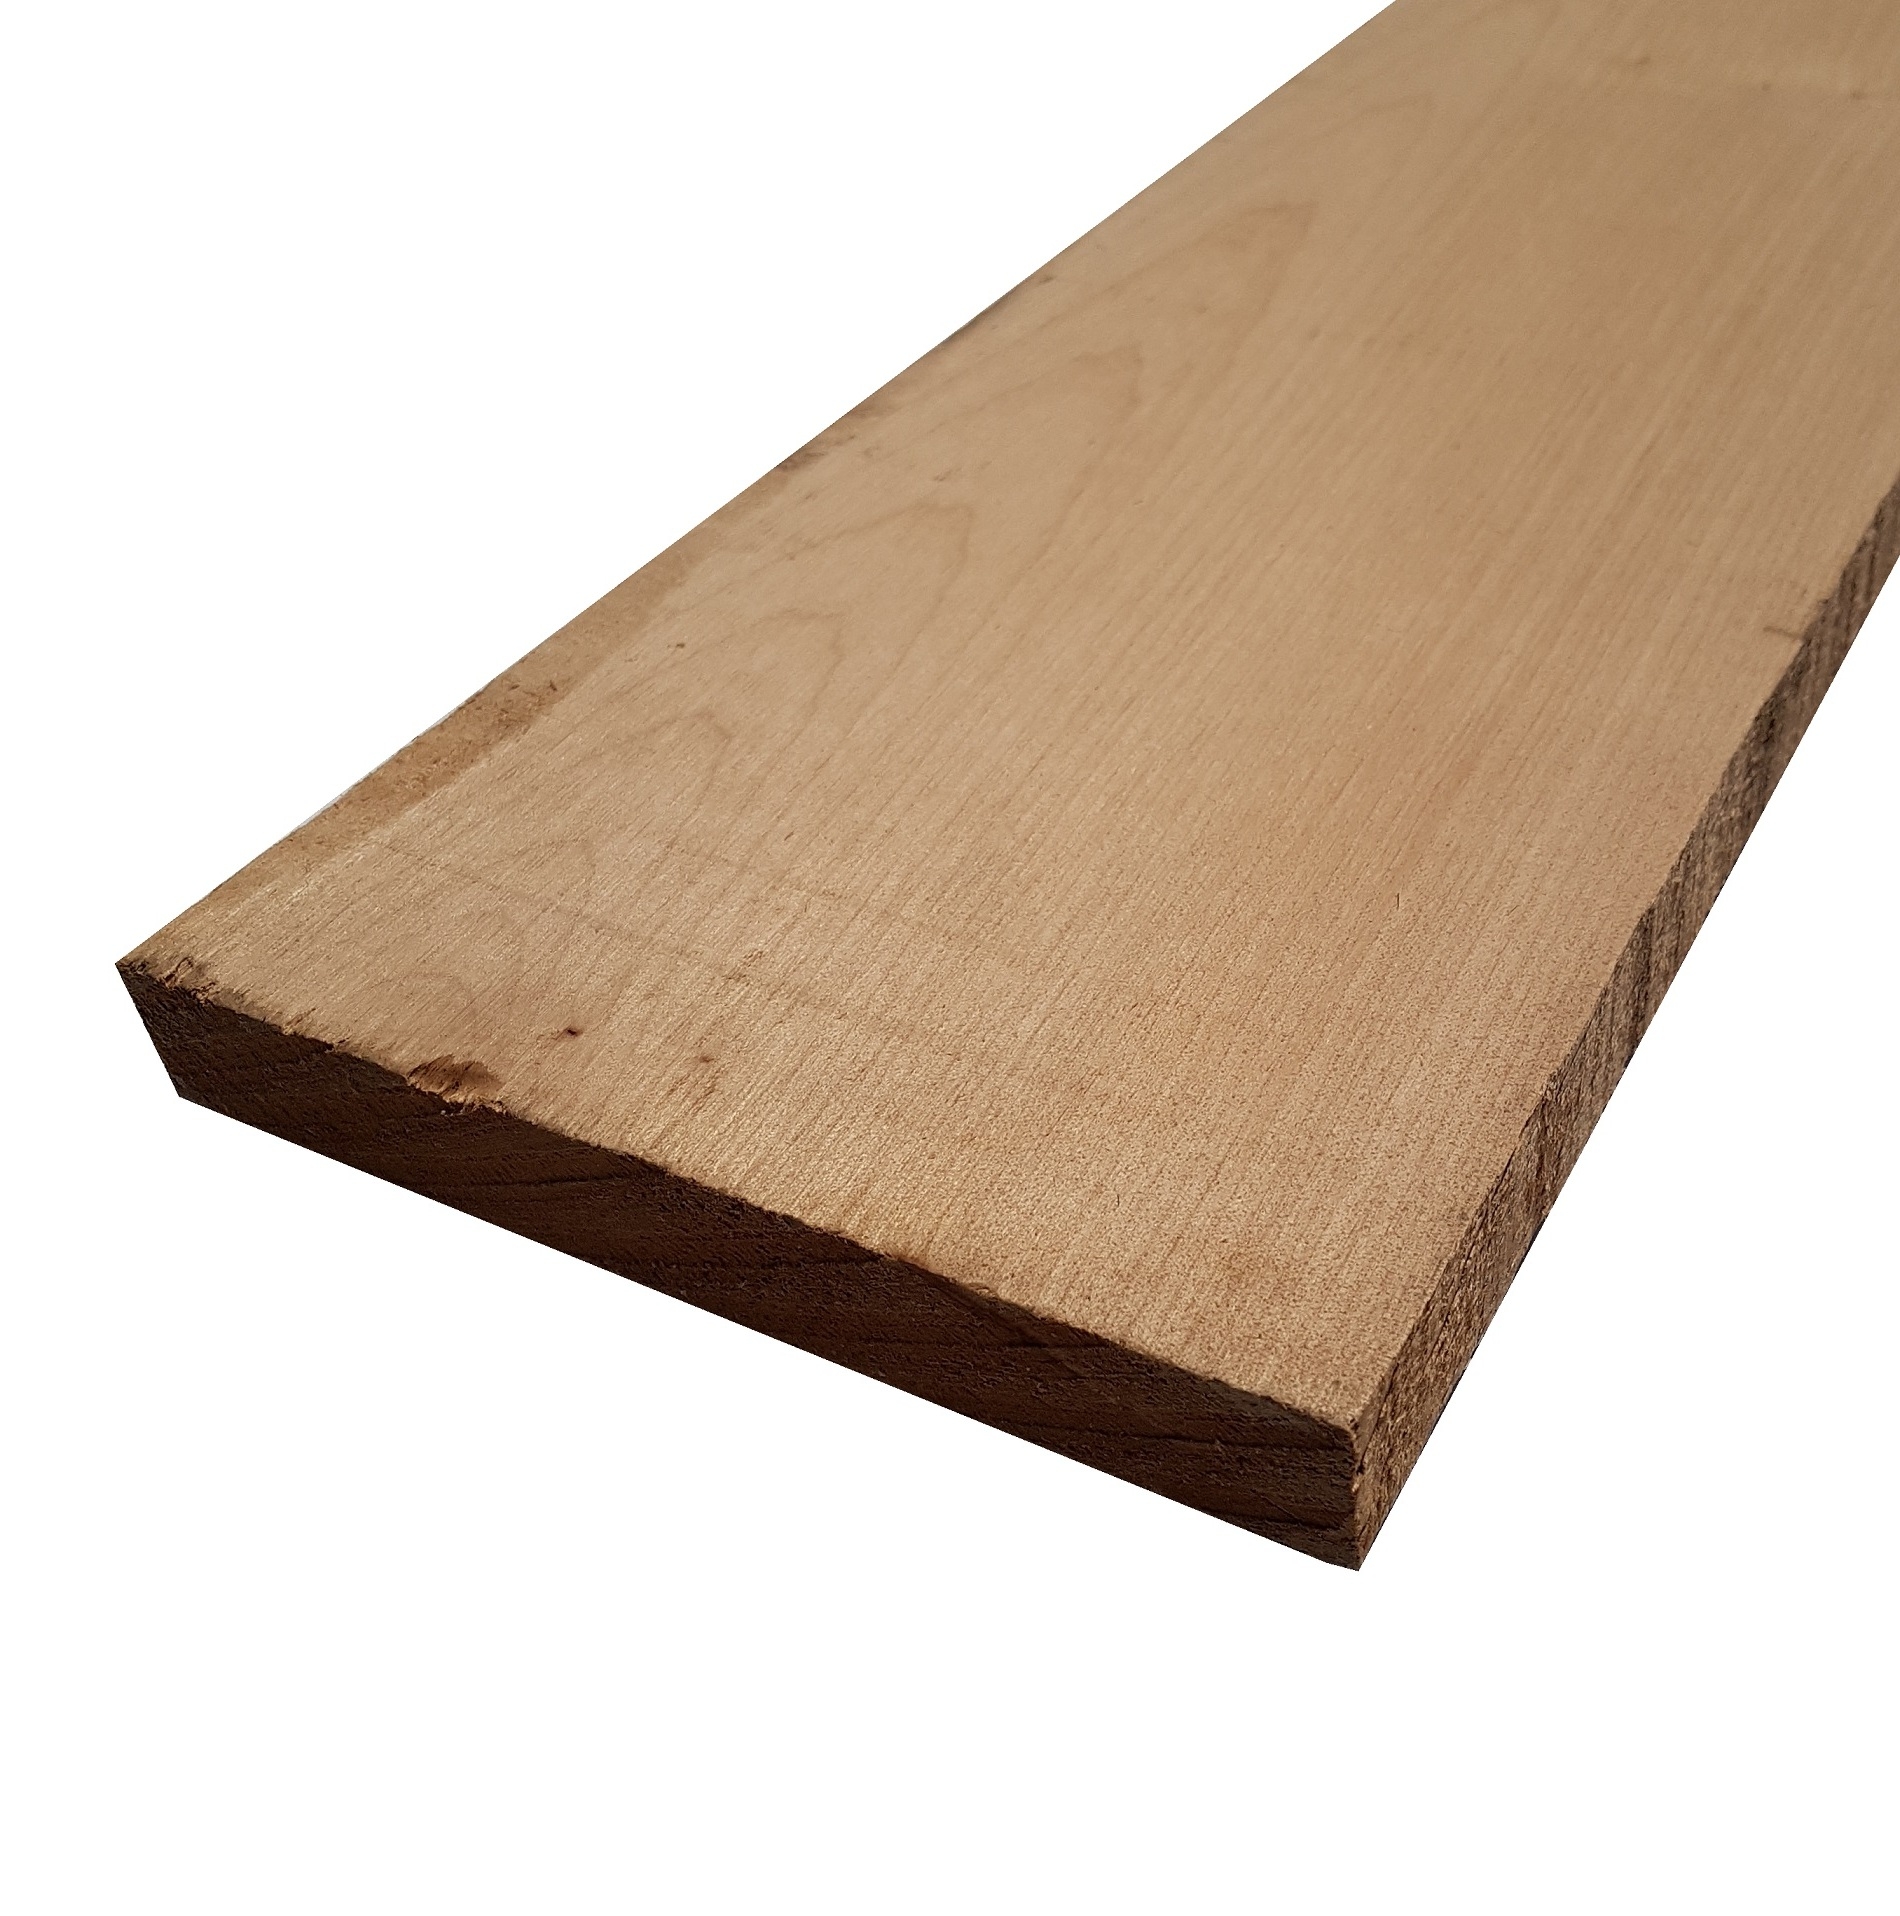 Tavola legno di Acero Pacific Coast Maple Calibrato refilato grezzo mm 24 x 90 x 1800